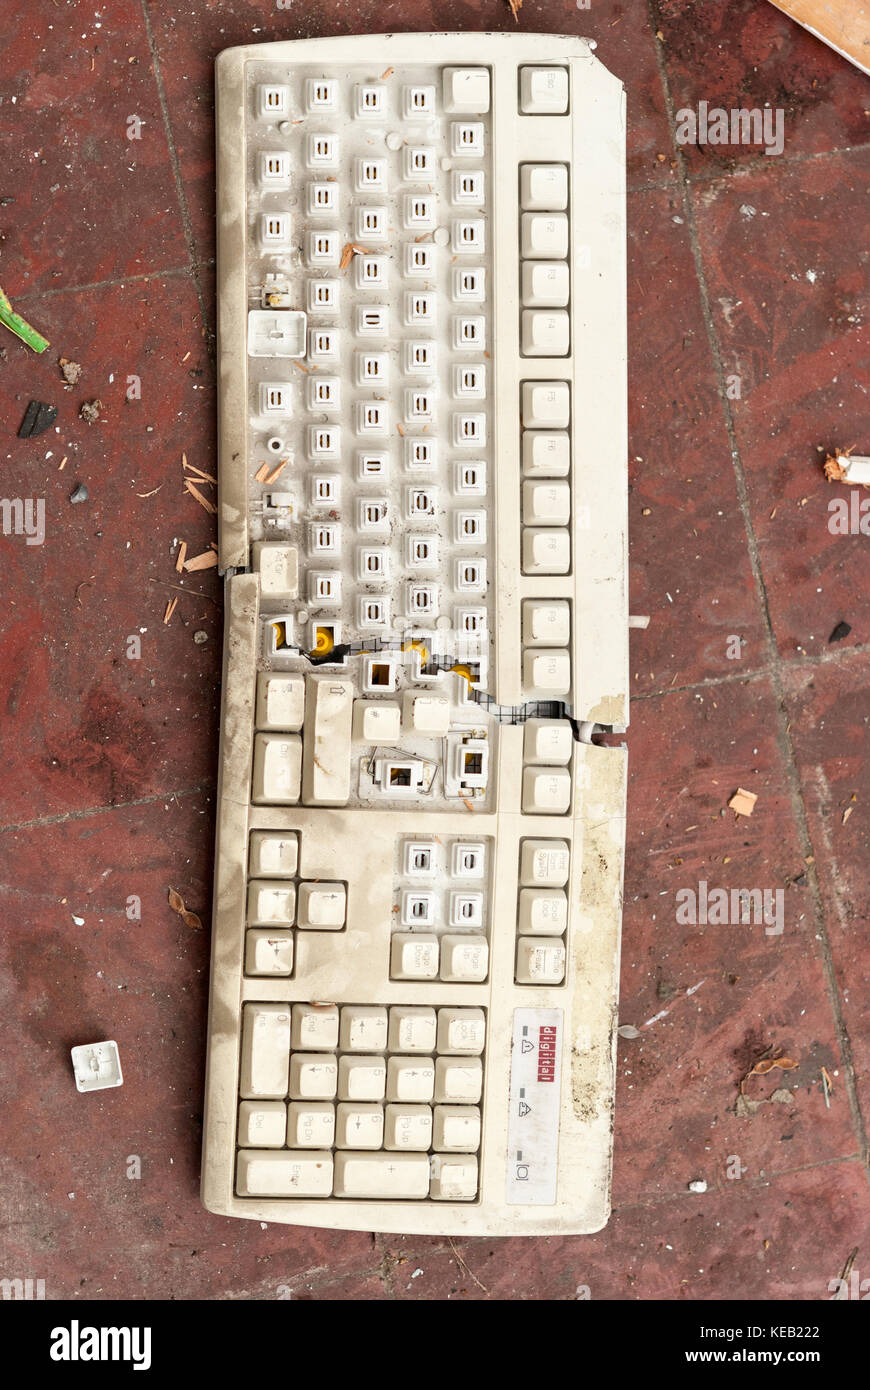 Antiguos teclados de ordenador PC rotas Foto de stock